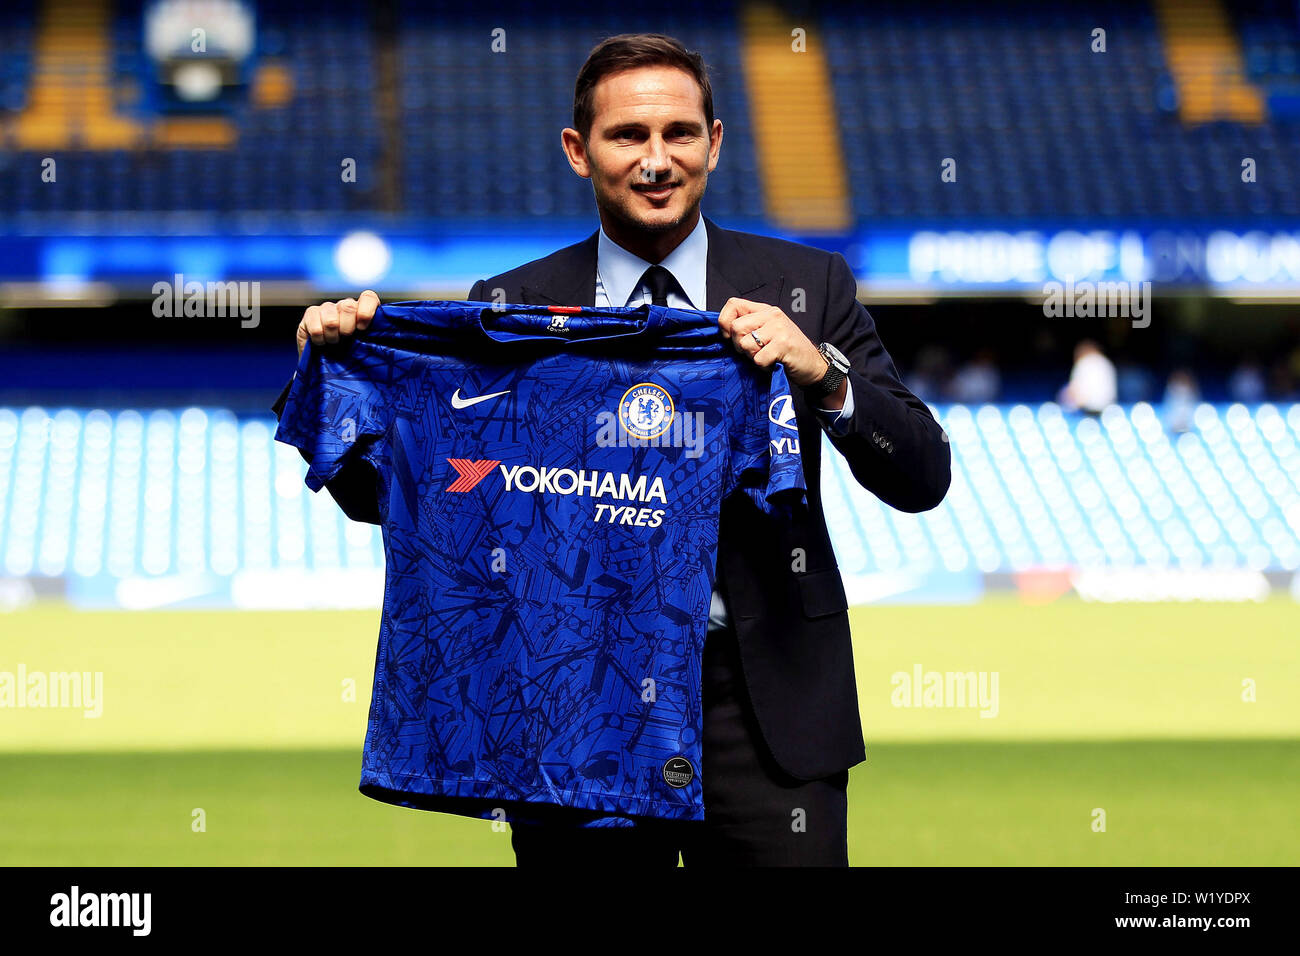 Londres, Reino Unido. 04 Julio, 2019. Nuevo head coach de Chelsea Frank  Lampard celebra la Camiseta Chelsea dentro de Stamford Bridge. Frank  Lampard es anunciado como el nuevo manager de Chelsea FC